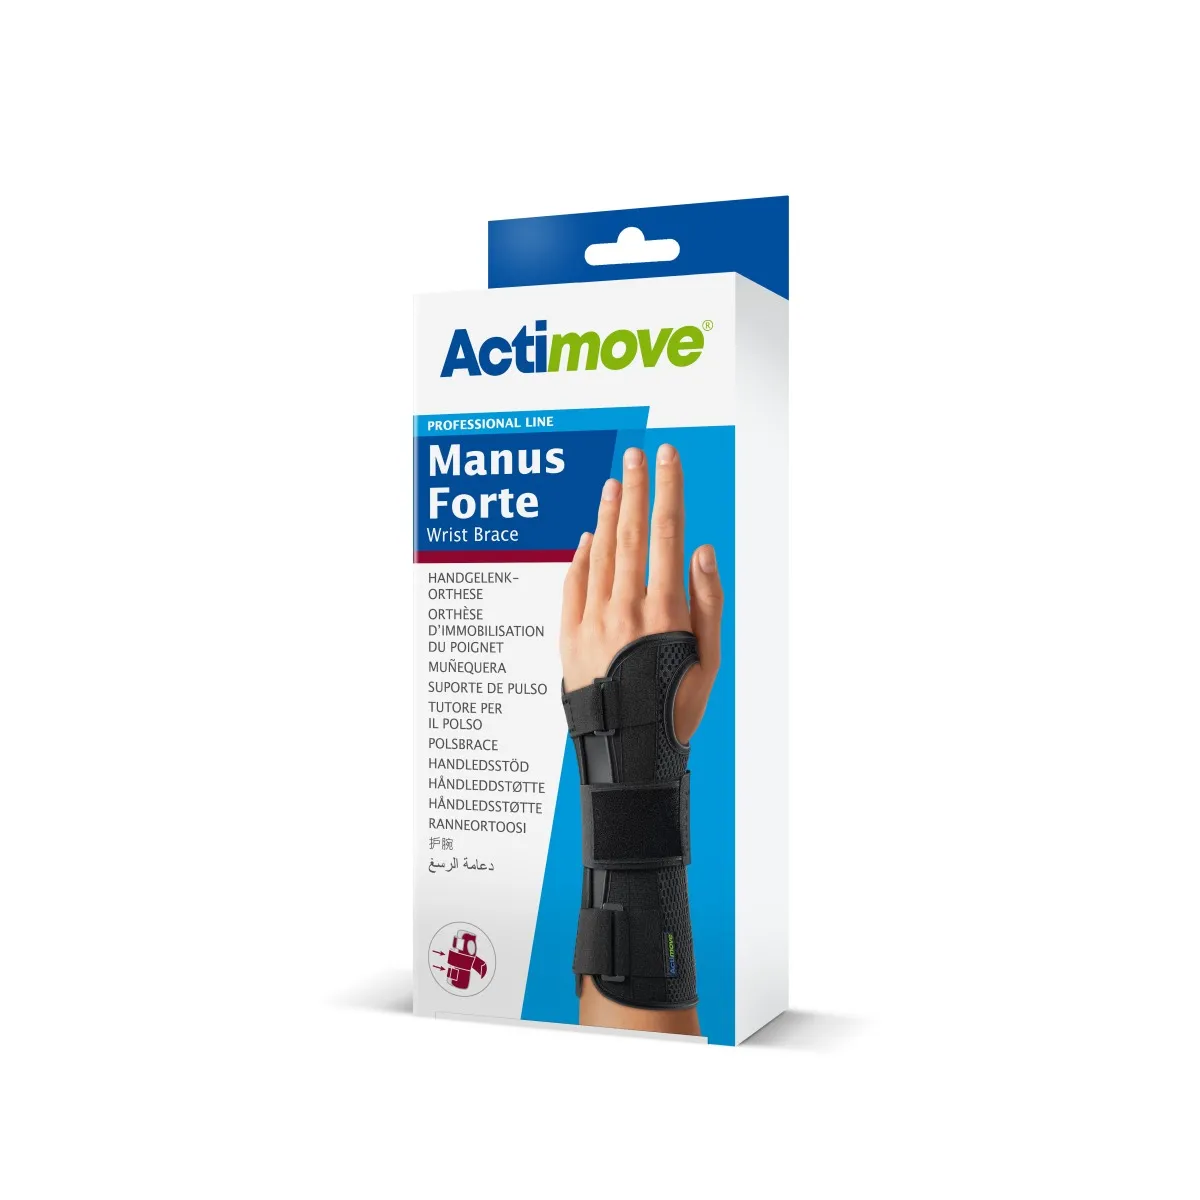 Actimove Professional Line Manus Forte orteza nadgarstka na prawą rękę, czarna, L/XL, 1 szt.